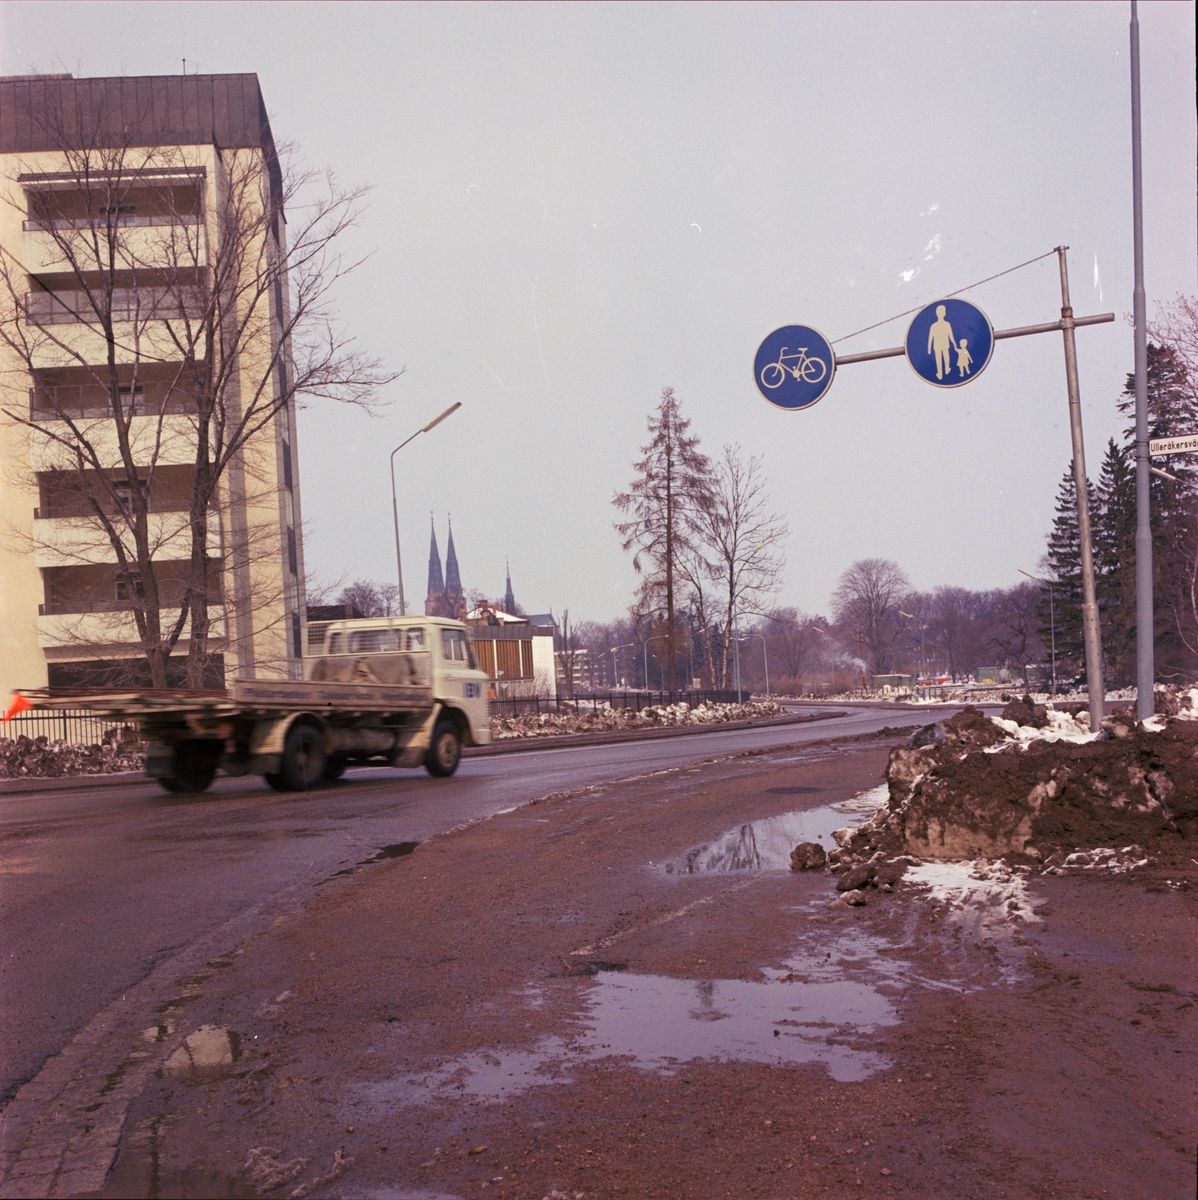 Trafik på Sjukhusvägen, Uppsala 1970